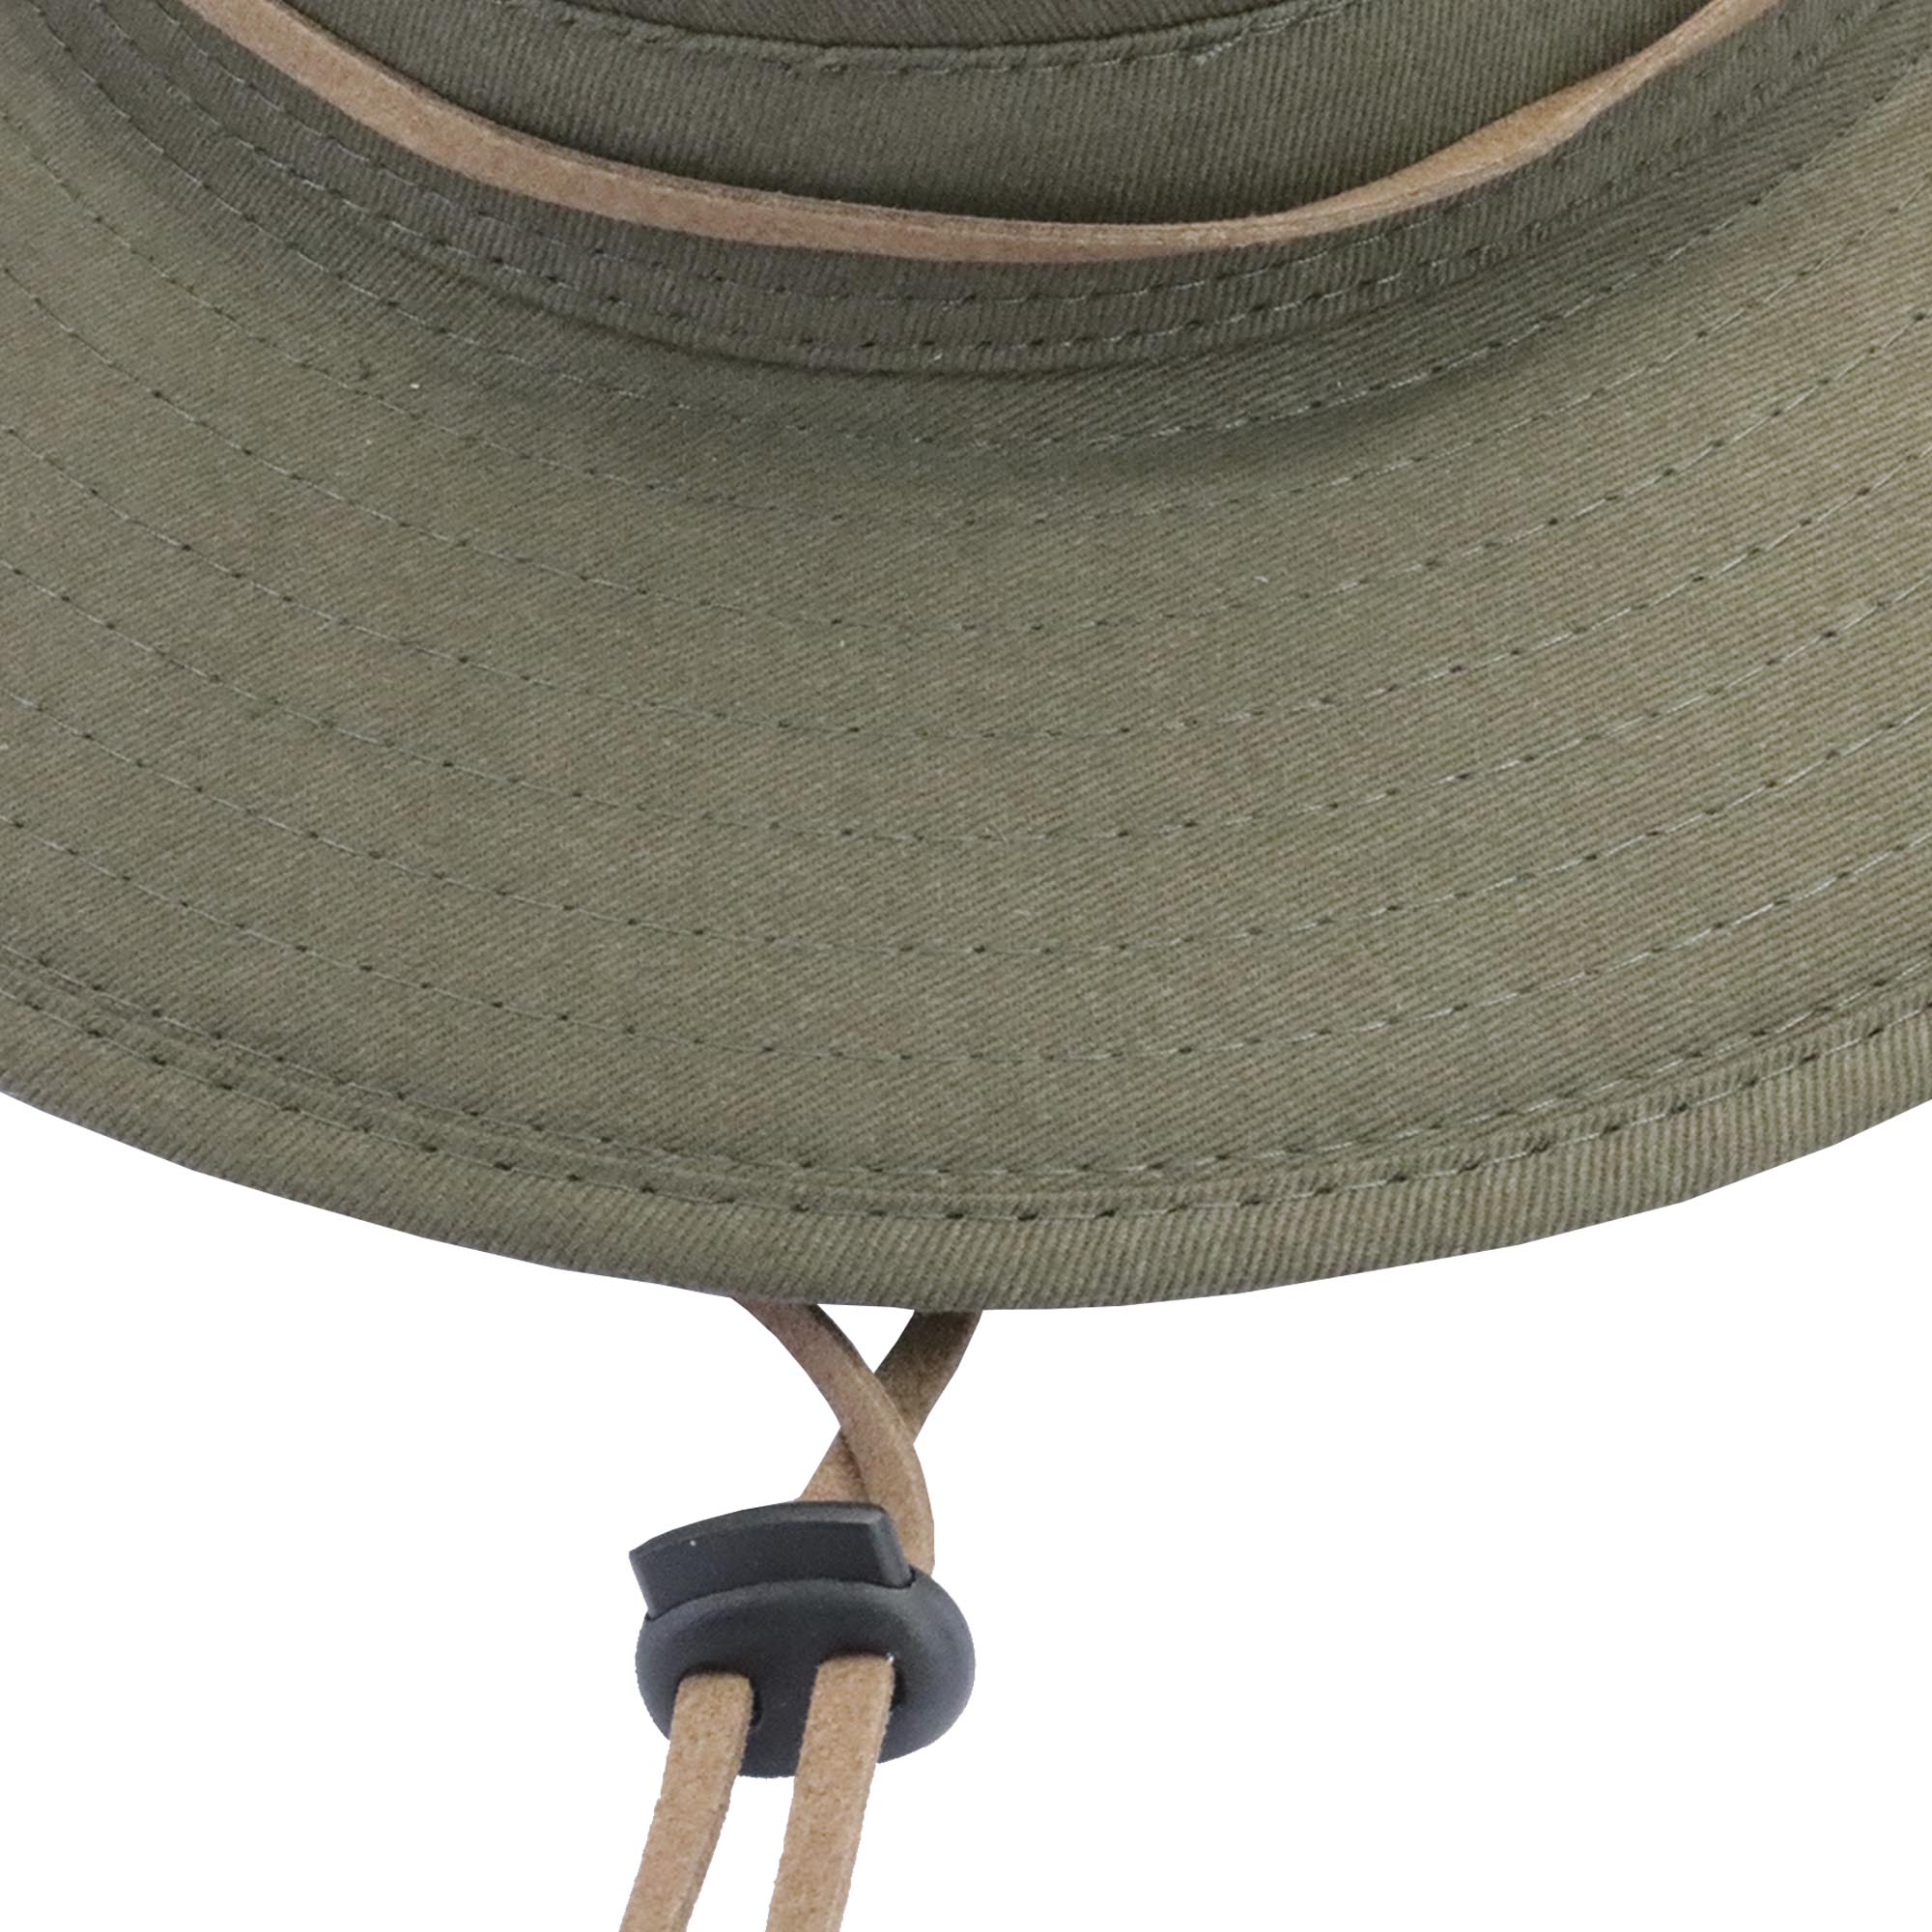 Sombrero indiana con cuerda ajustable 